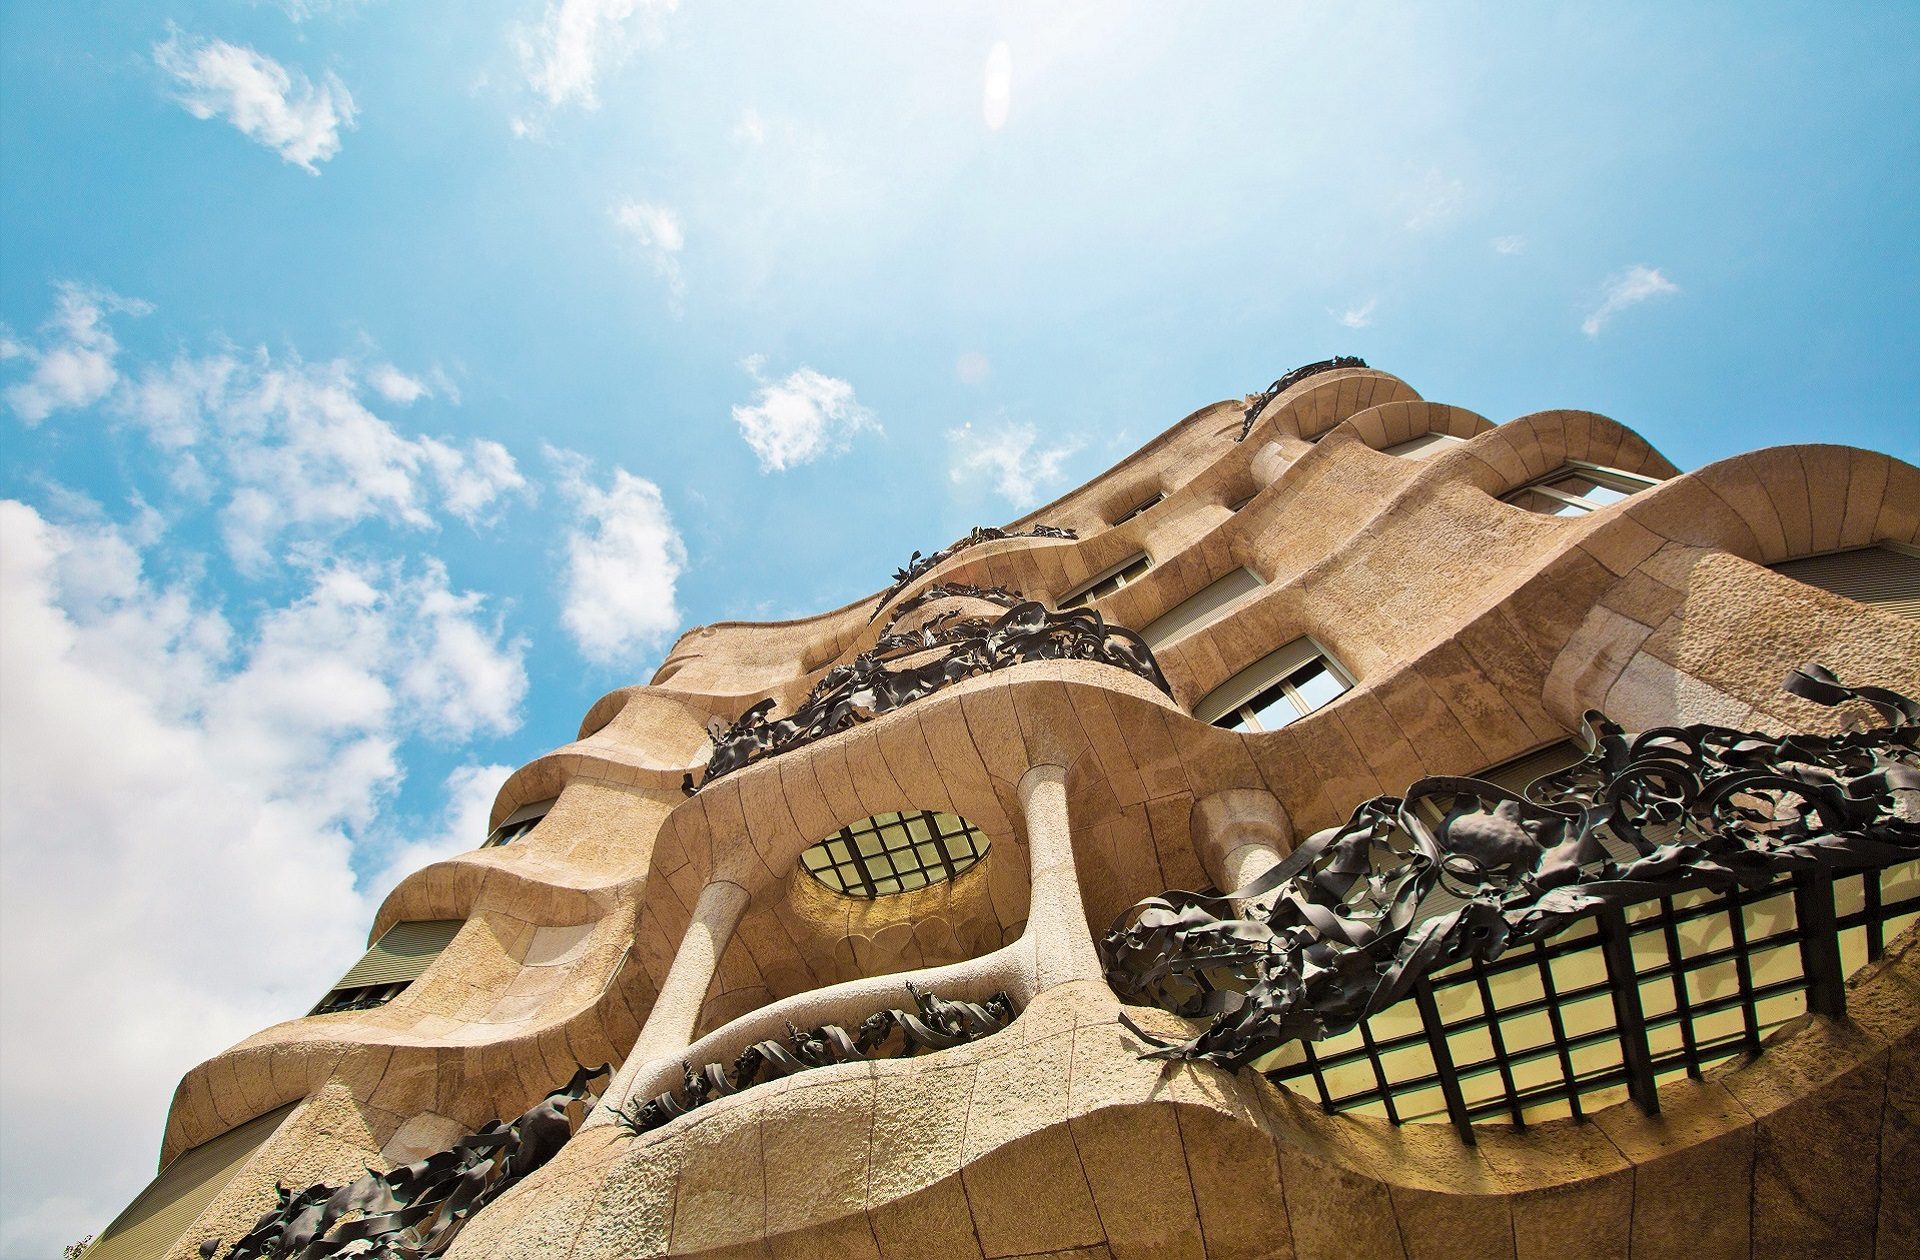 atchitektoniczne cuda zaprojektowane przez słynnego Antonio Gaudiego w stolicy Katalonii Barcelonie